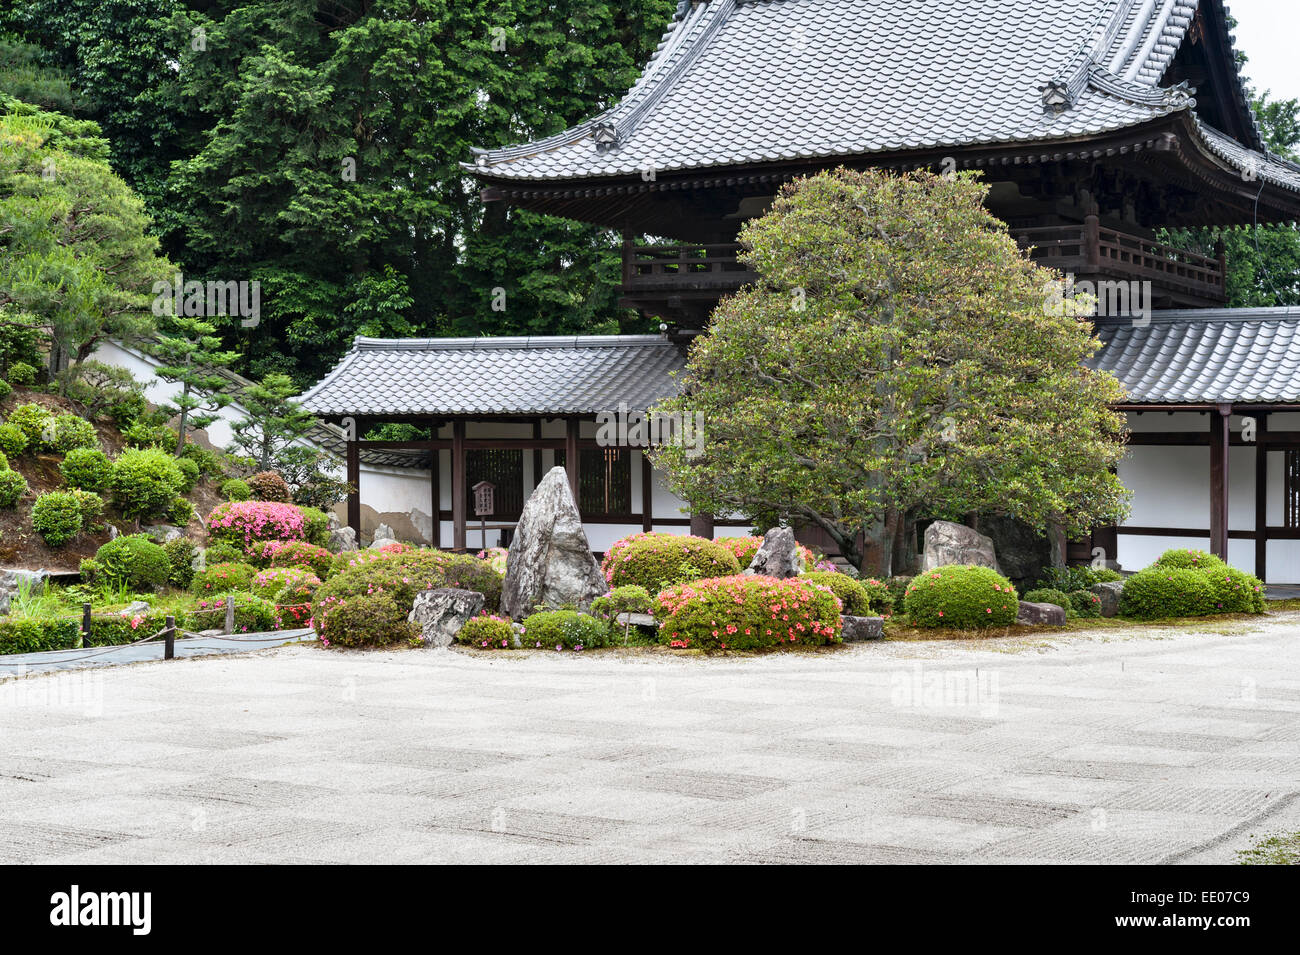 Tempio Kaisan-do zen, Tofuku-ji, Kyoto, Giappone. La sabbia nel giardino kare-sansui (asciutto) è accuratamente rastrellata in un motivo a scacchi Foto Stock